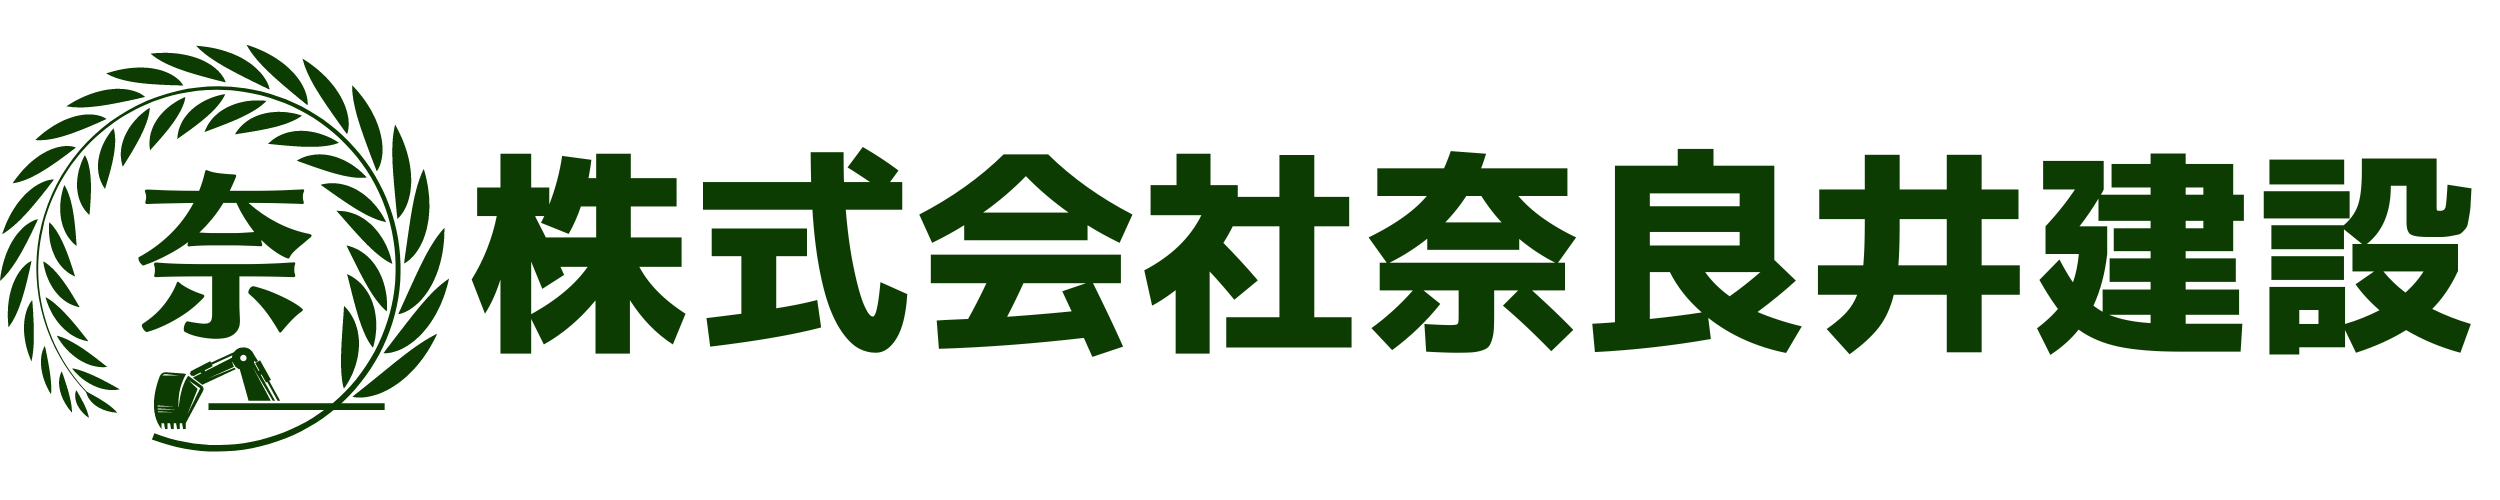 株式会社奈良井建設 Logo